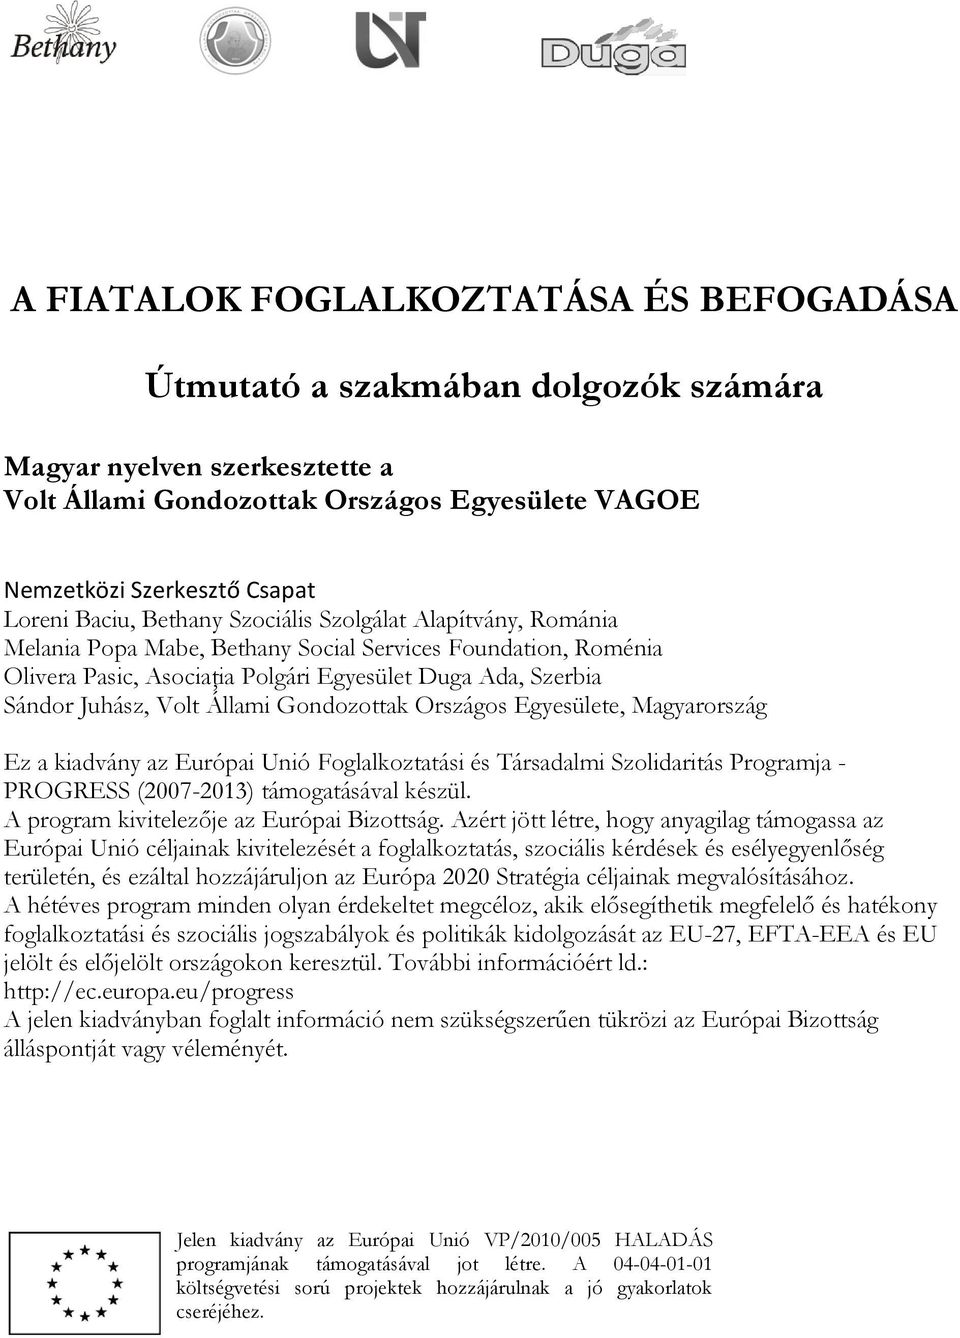 Állami Gondozottak Országos Egyesülete, Magyarország Ez a kiadvány az Európai Unió Foglalkoztatási és Társadalmi Szolidaritás Programja - PROGRESS (2007-2013) támogatásával készül.